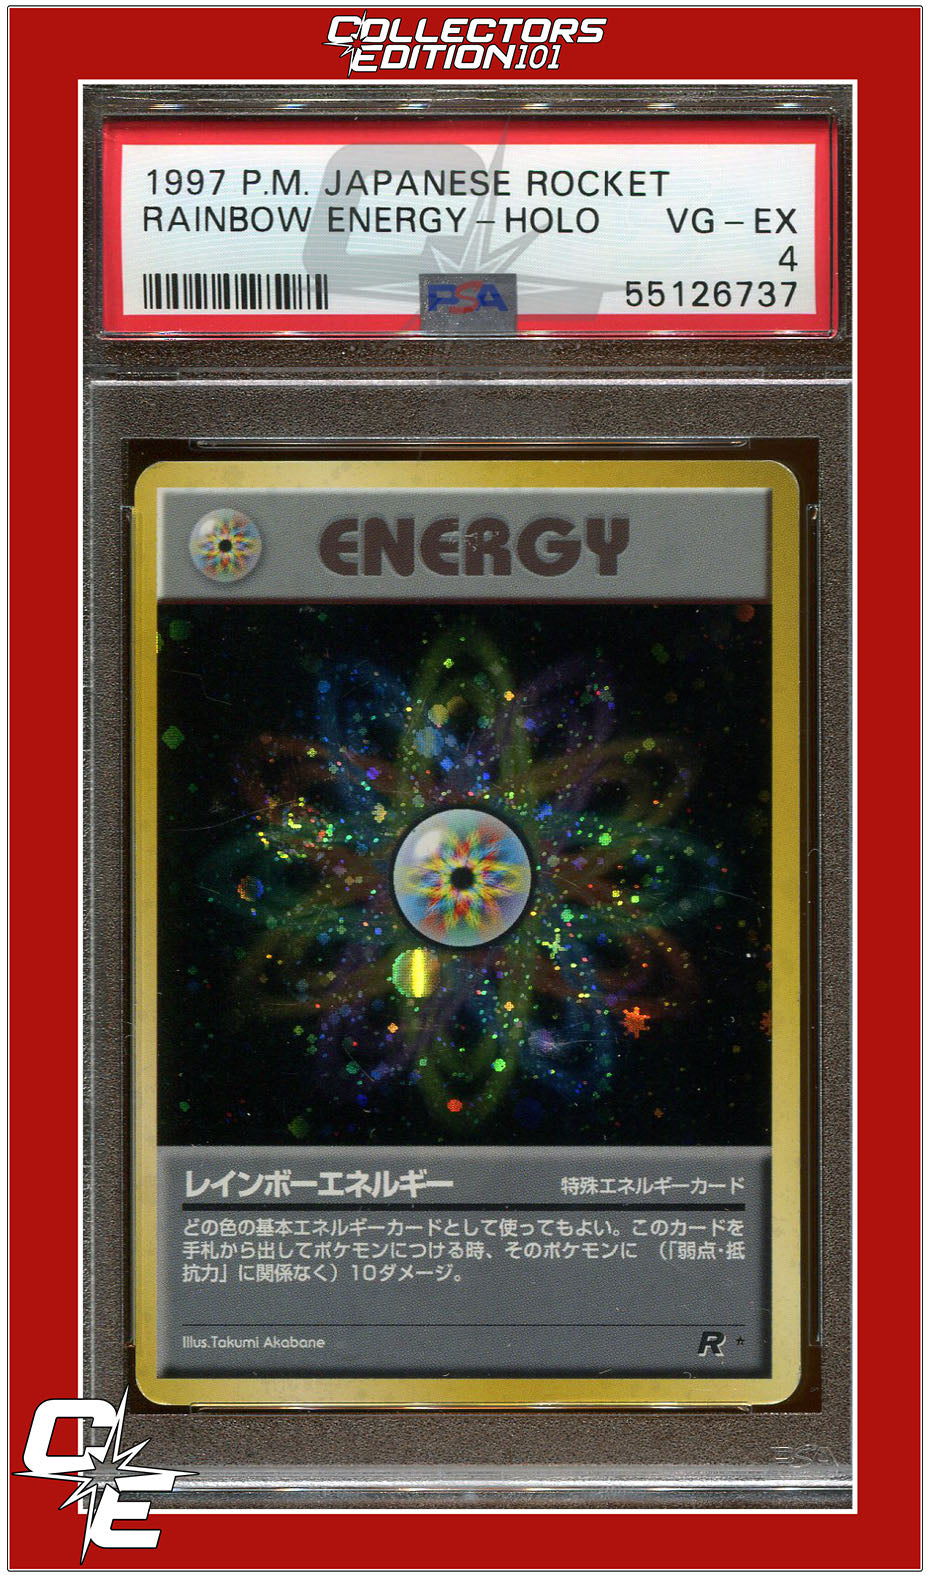 Japanese Rocket Rainbow Energy Holo PSA 4